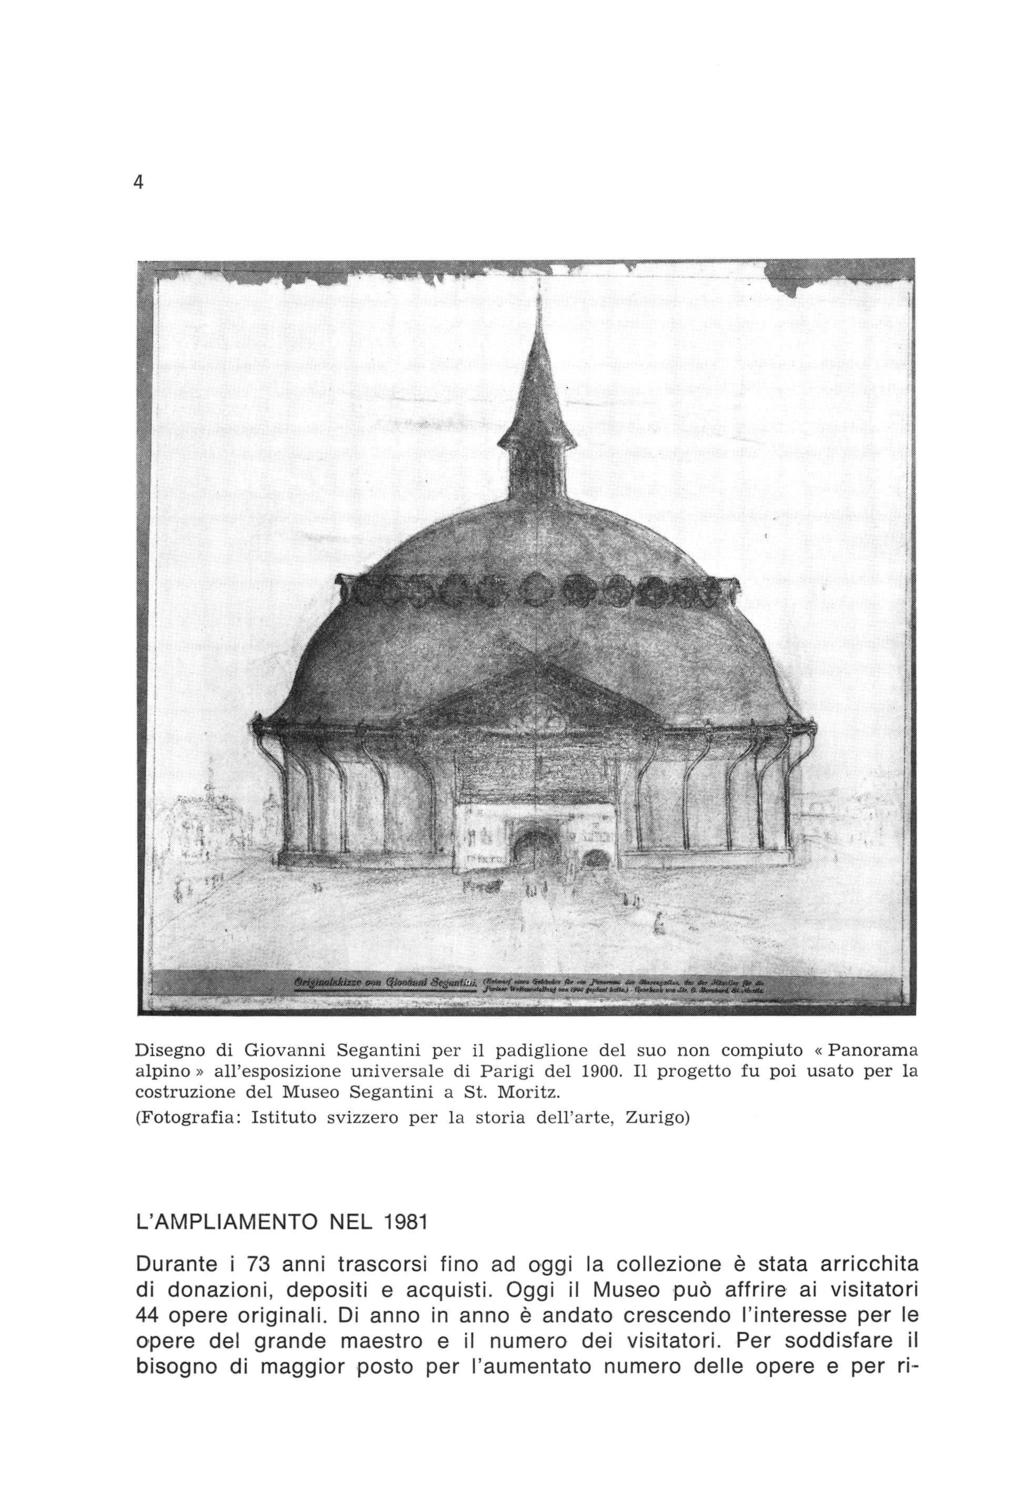 Disegno di Giovanni Segantini per il padiglione del suo non compiuto «Panorama alpino» all'esposizione universale di Parigi del 1900. progetto fu poi usato per la costruzione del Museo Segantini a St.